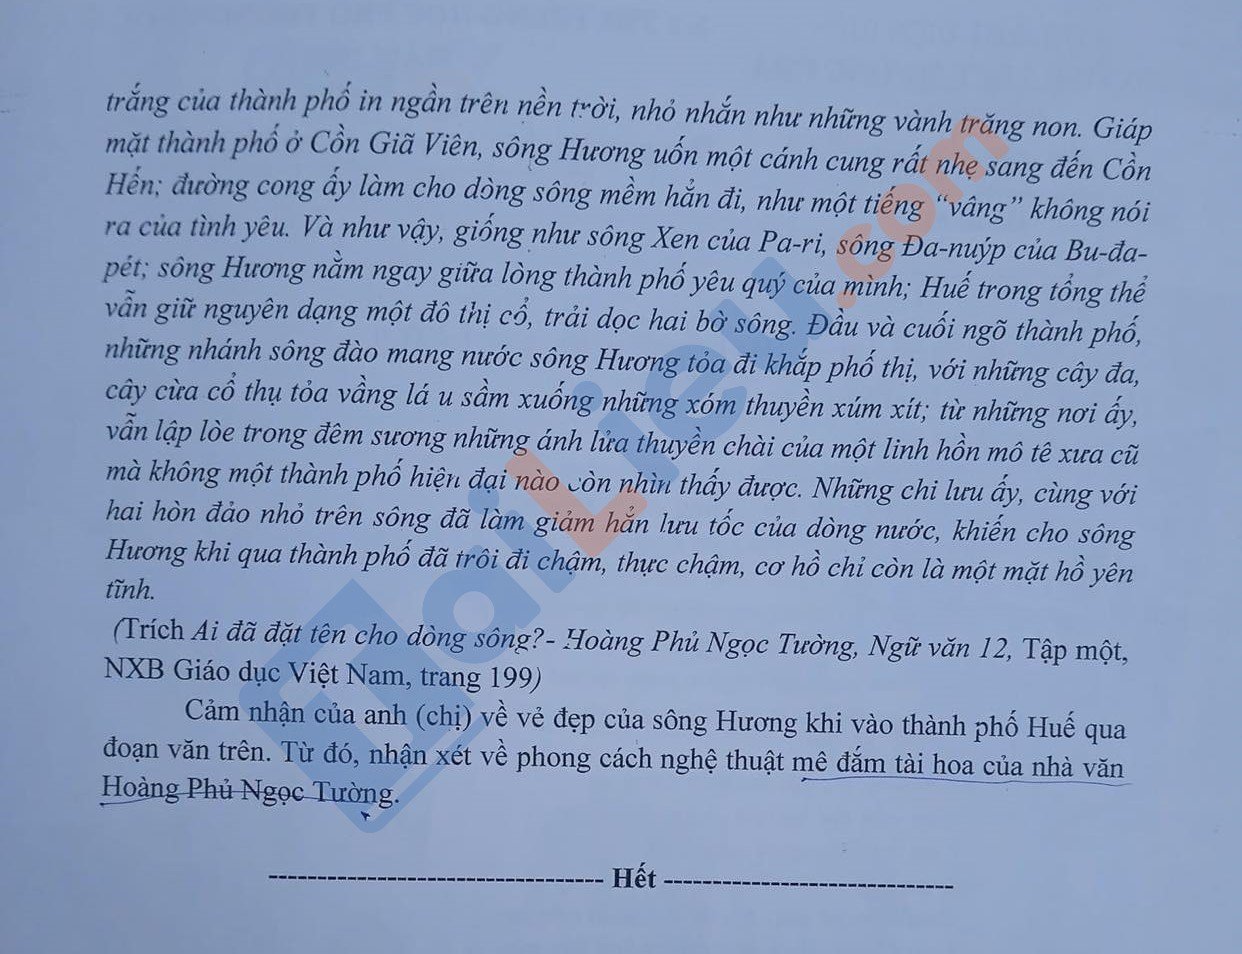 Đề thi thử THPT Quốc gia môn Ngữ văn 2022 trường THPT Mường Chà - Điện Biên.